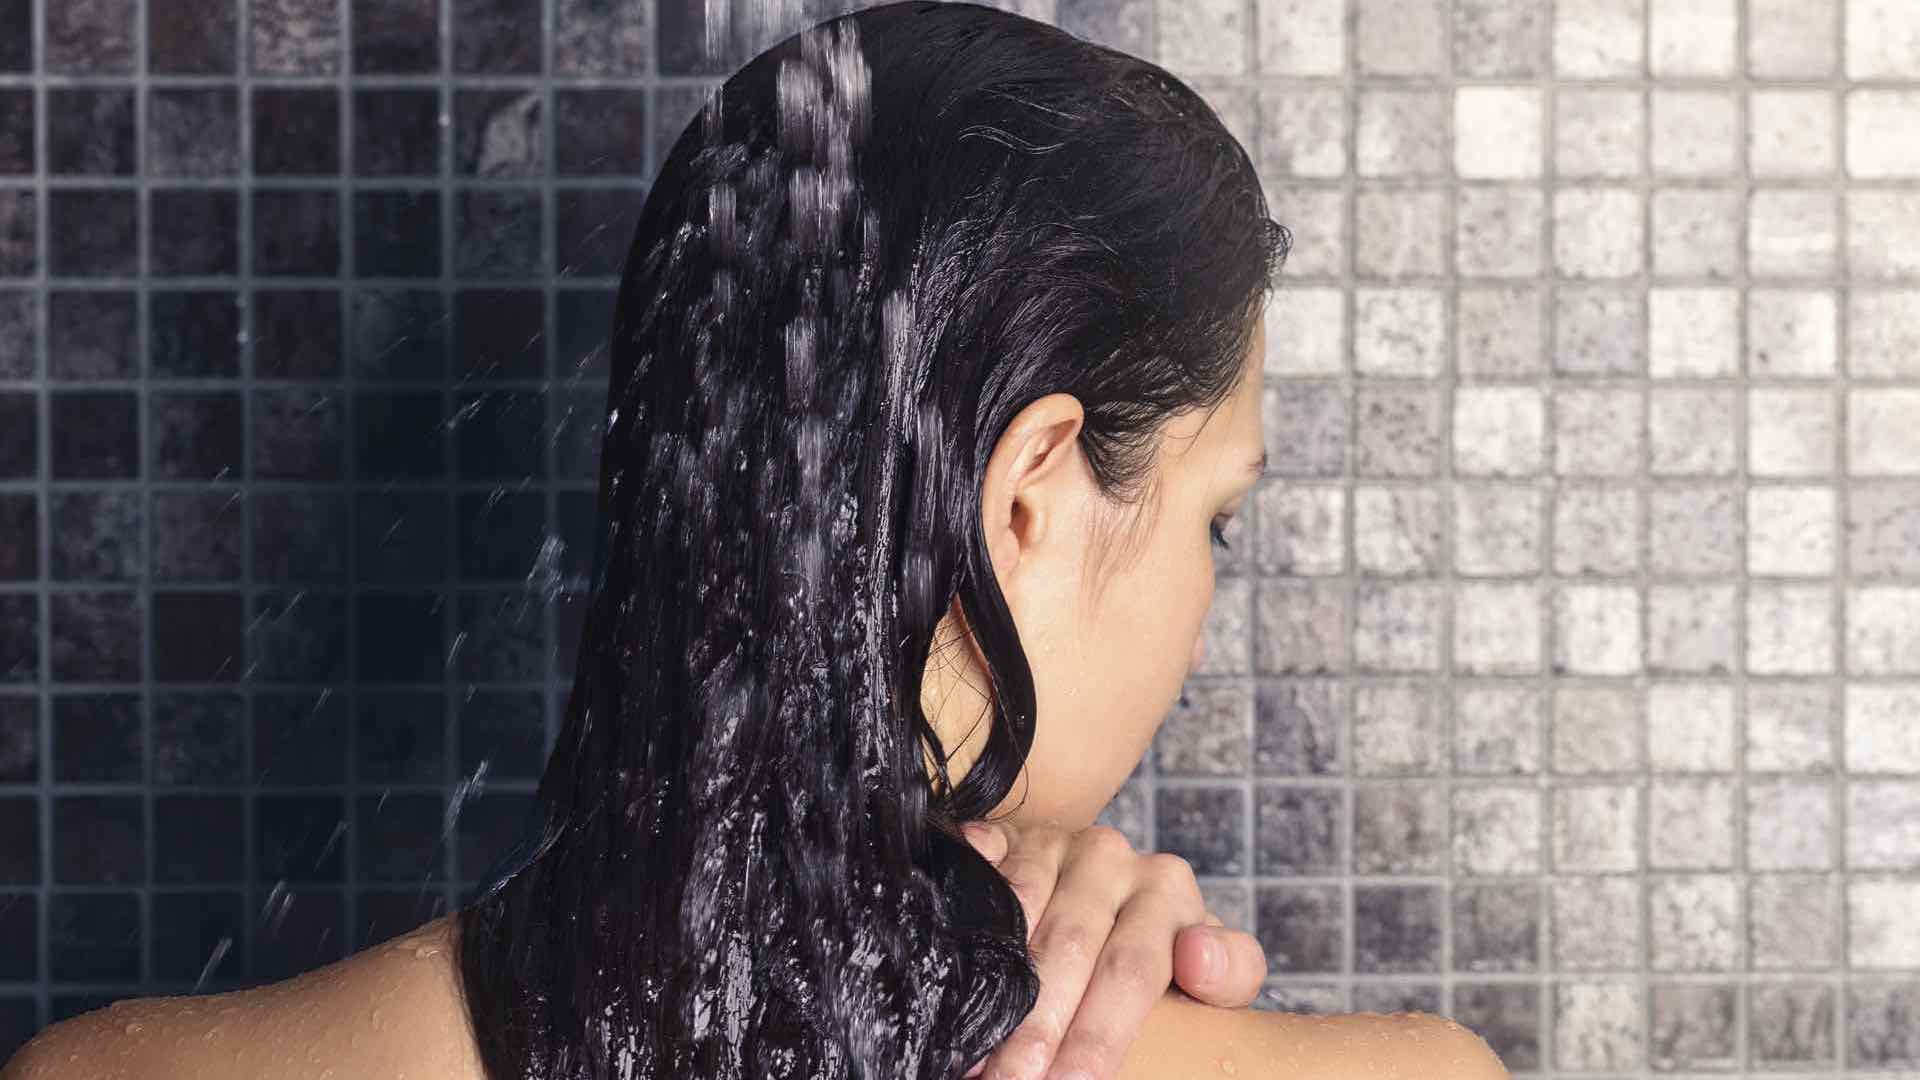 Come fare per mantenere i capelli puliti e sani con pochi lavaggi?